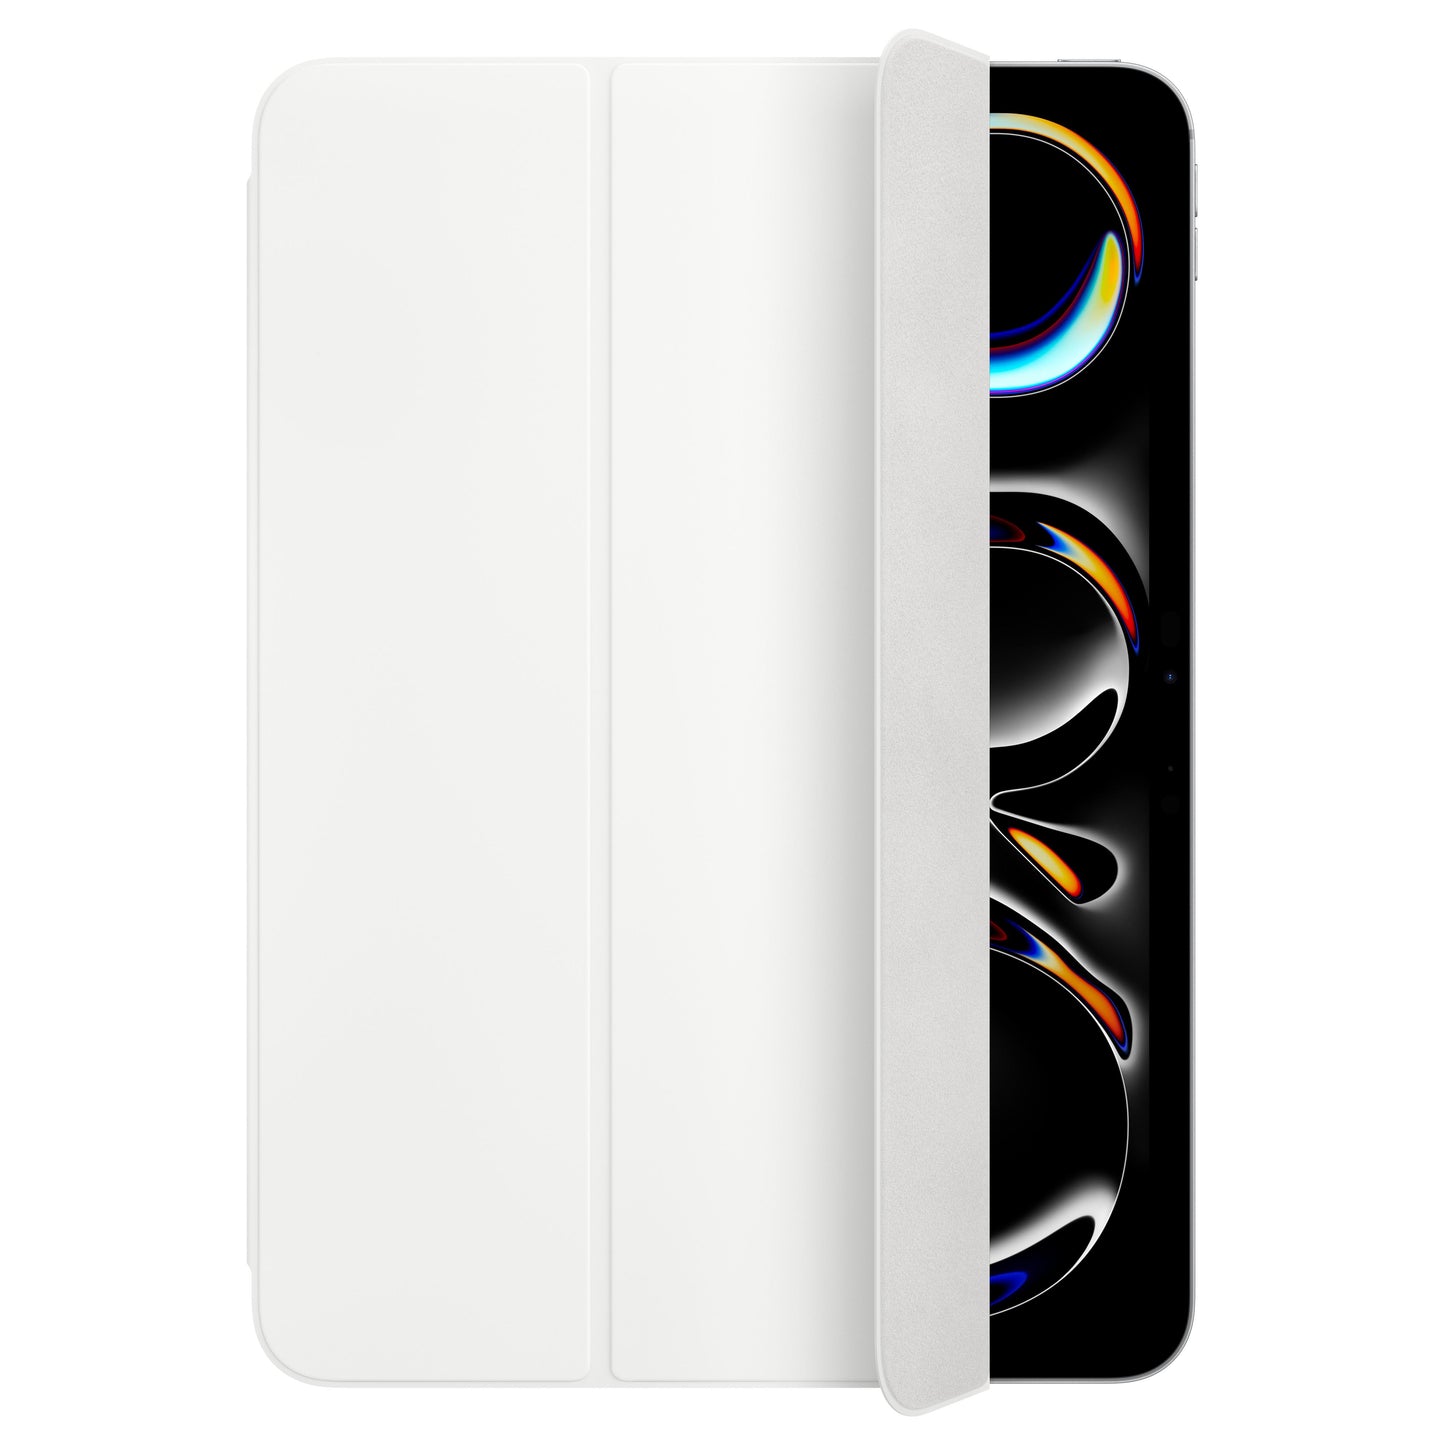 Smart Folio สำหรับ iPad Pro รุ่น 11 นิ้ว (ชิป M4) - สีขาว